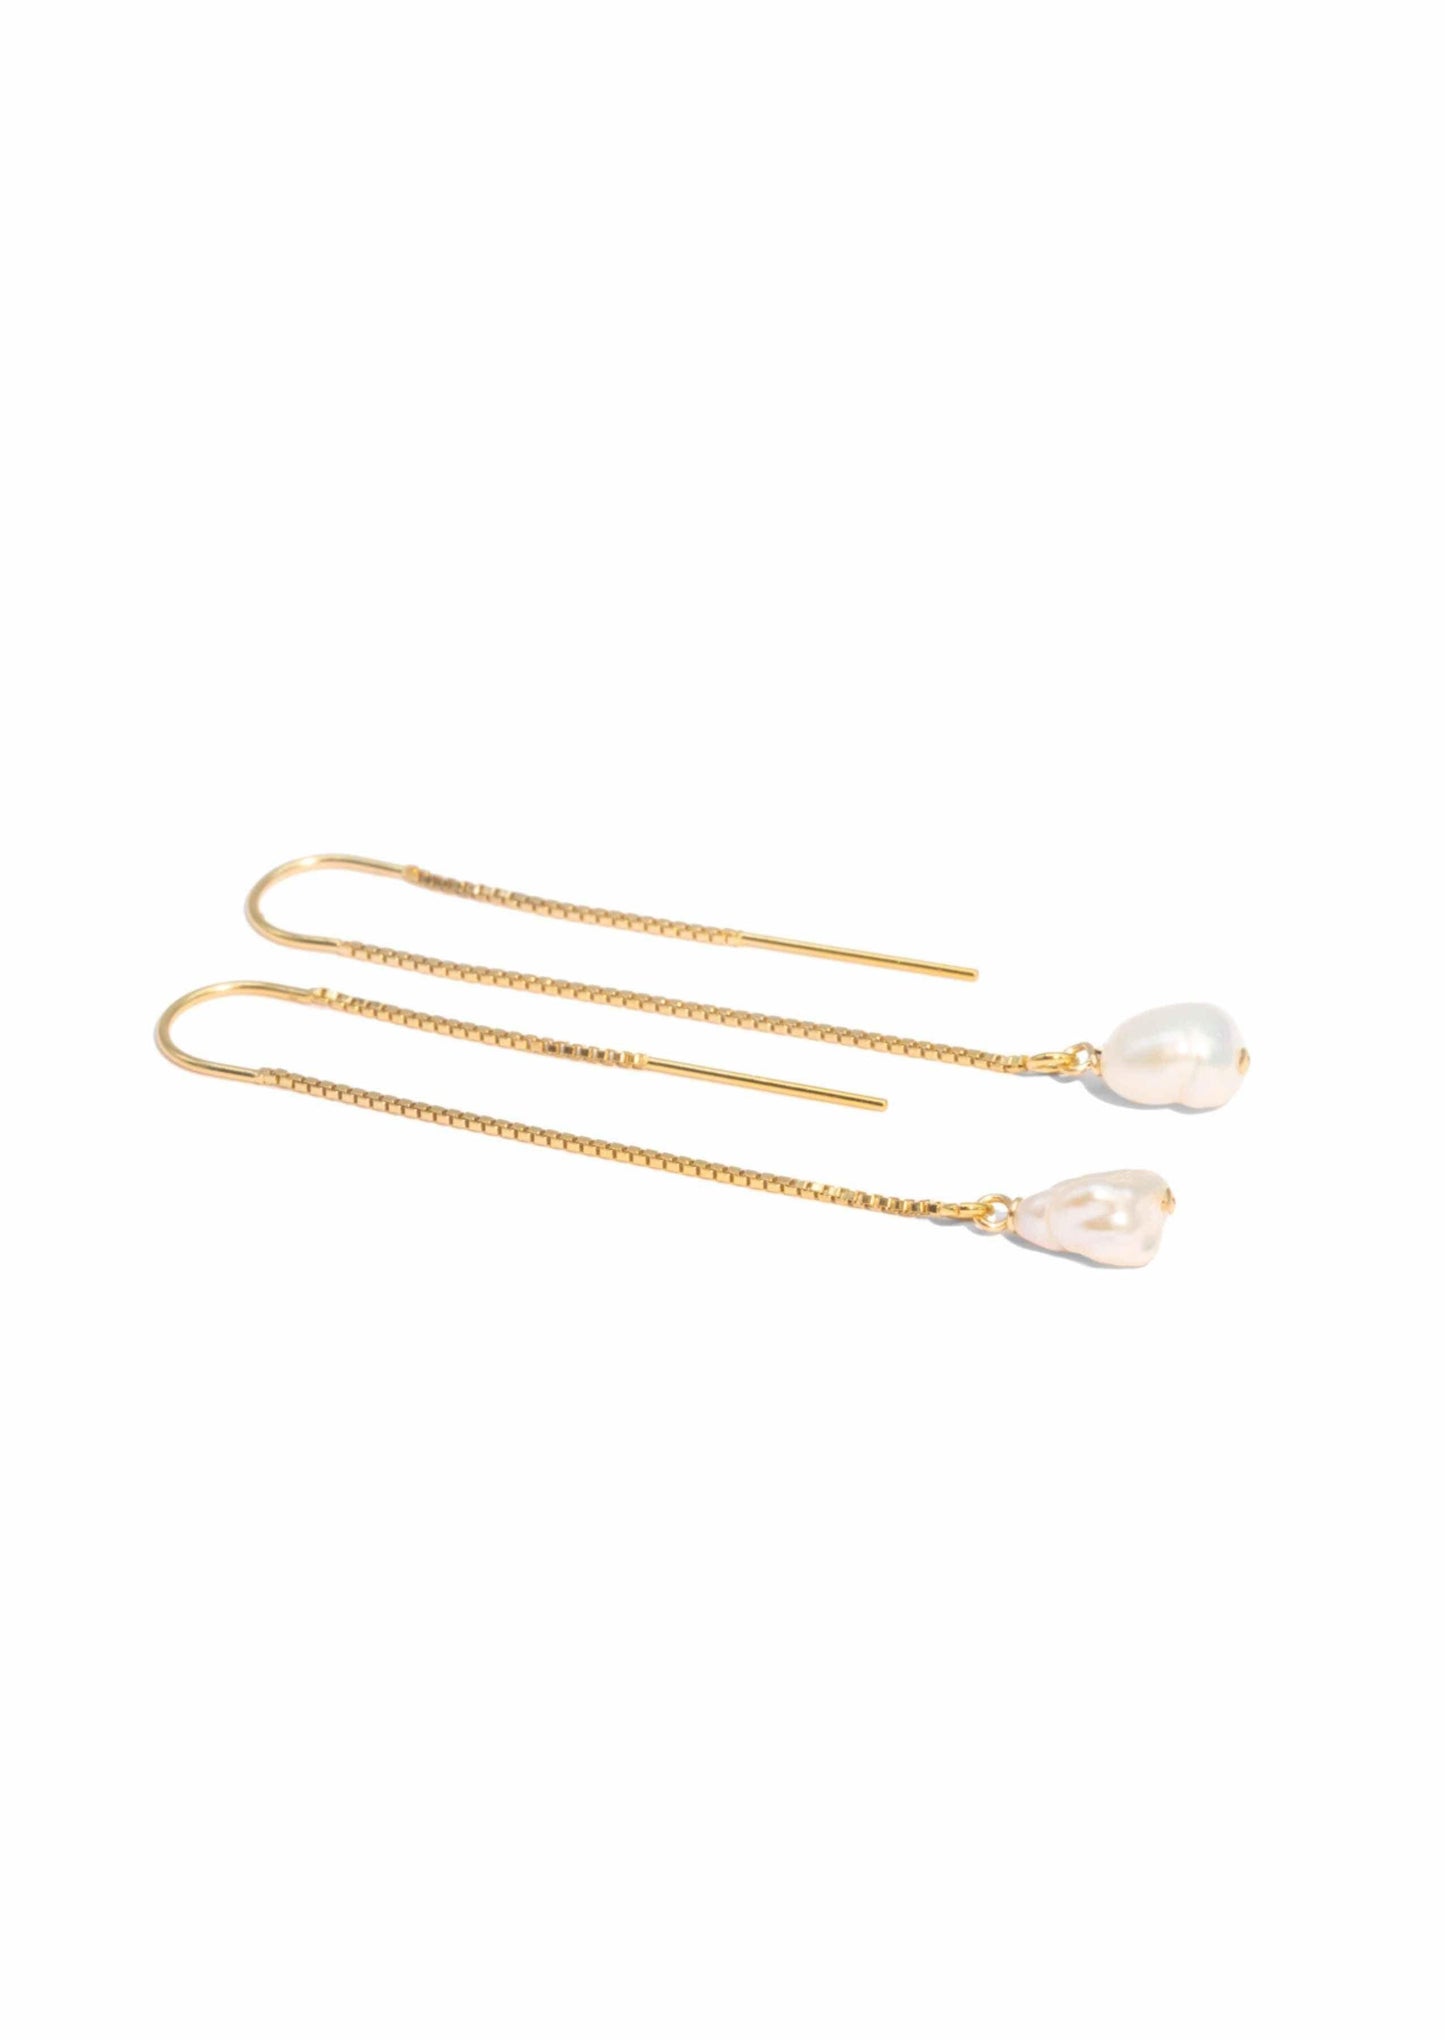 The Gold Pearl Sunlight Threader Earrings